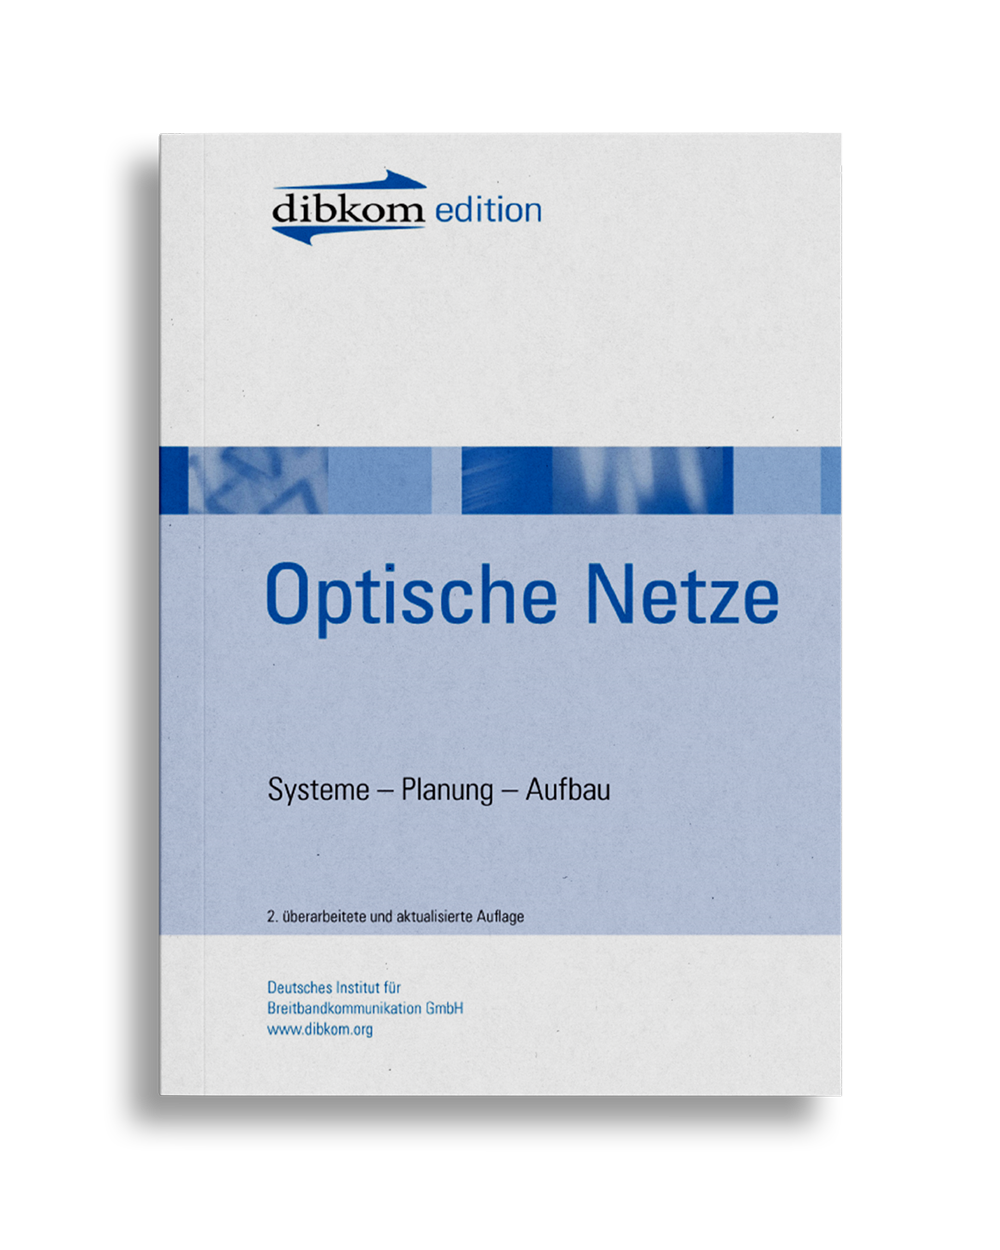 https://dibkom.net/wp-content/uploads/2017/06/Free_Book_Mockup_Freisteller_Optische_Netze.png